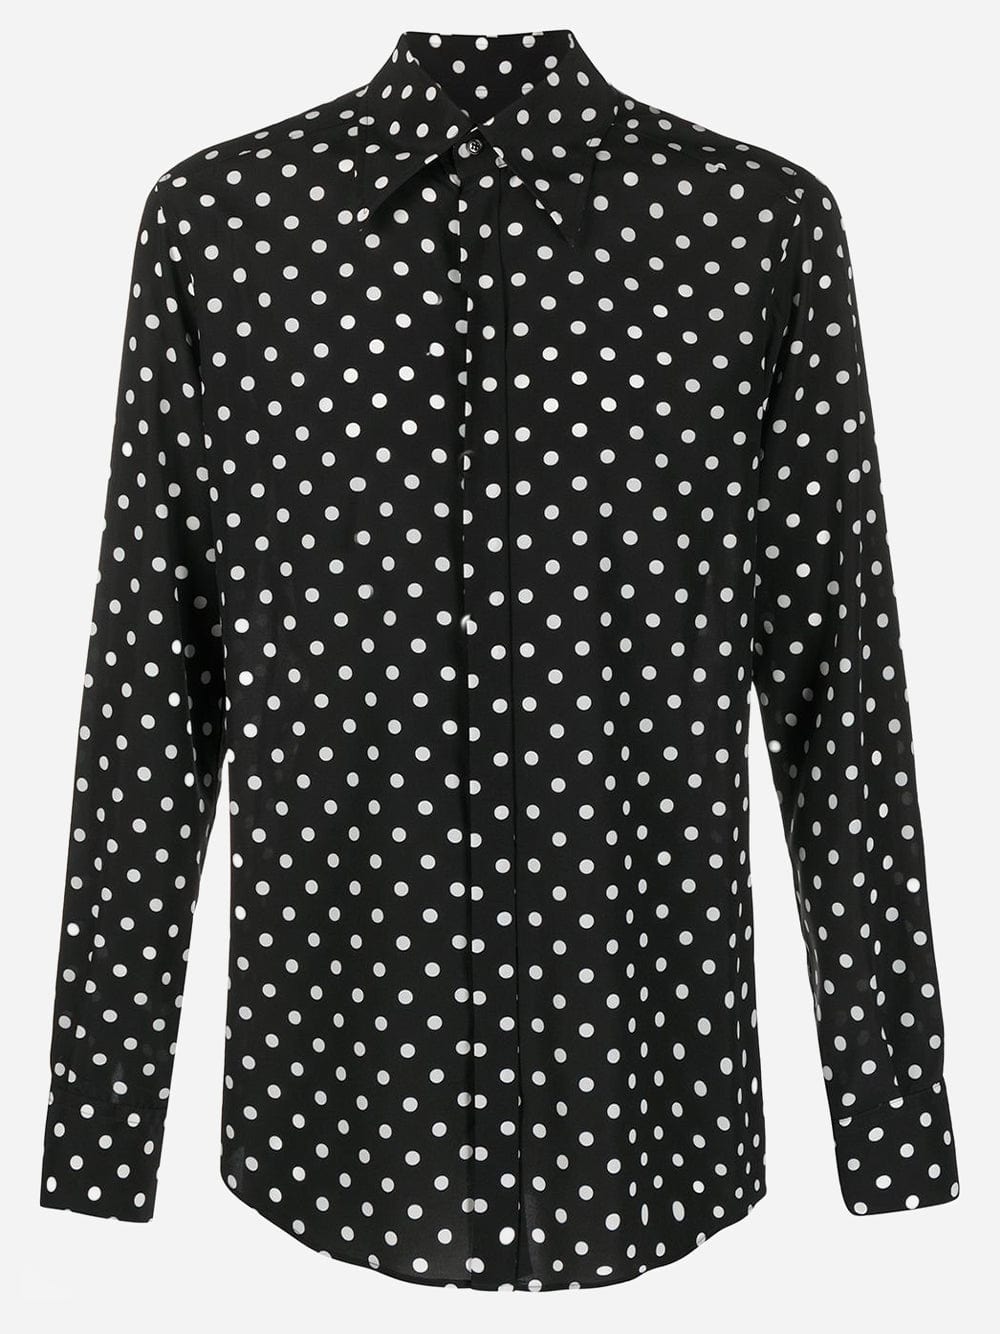 Dolce & Gabbana Polka Dot Printed Shirt